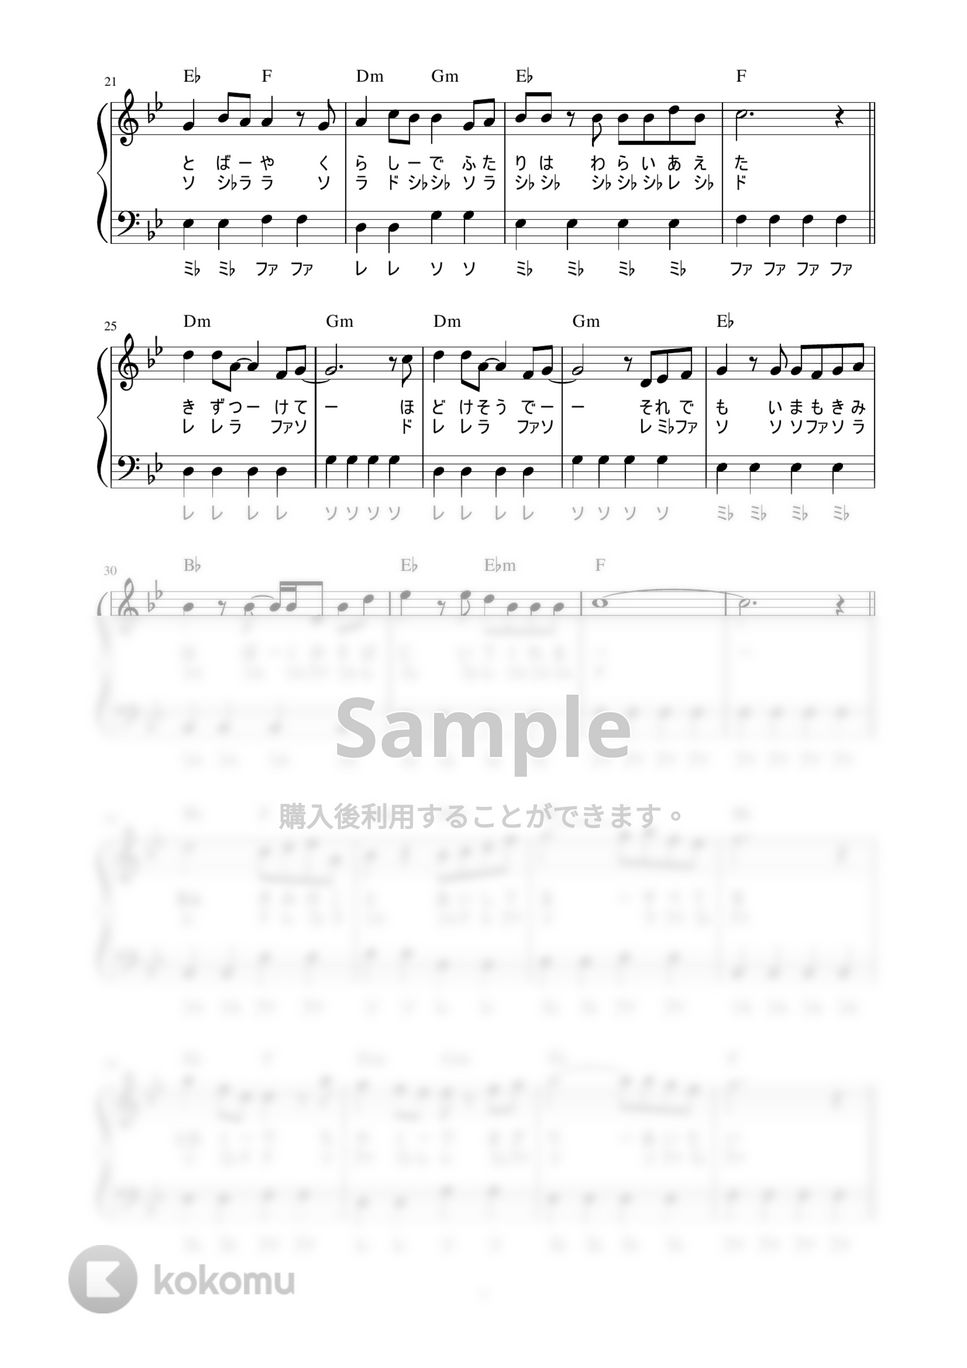 きゃない - バニラ (かんたん / 歌詞付き / ドレミ付き / 初心者) by piano.tokyo